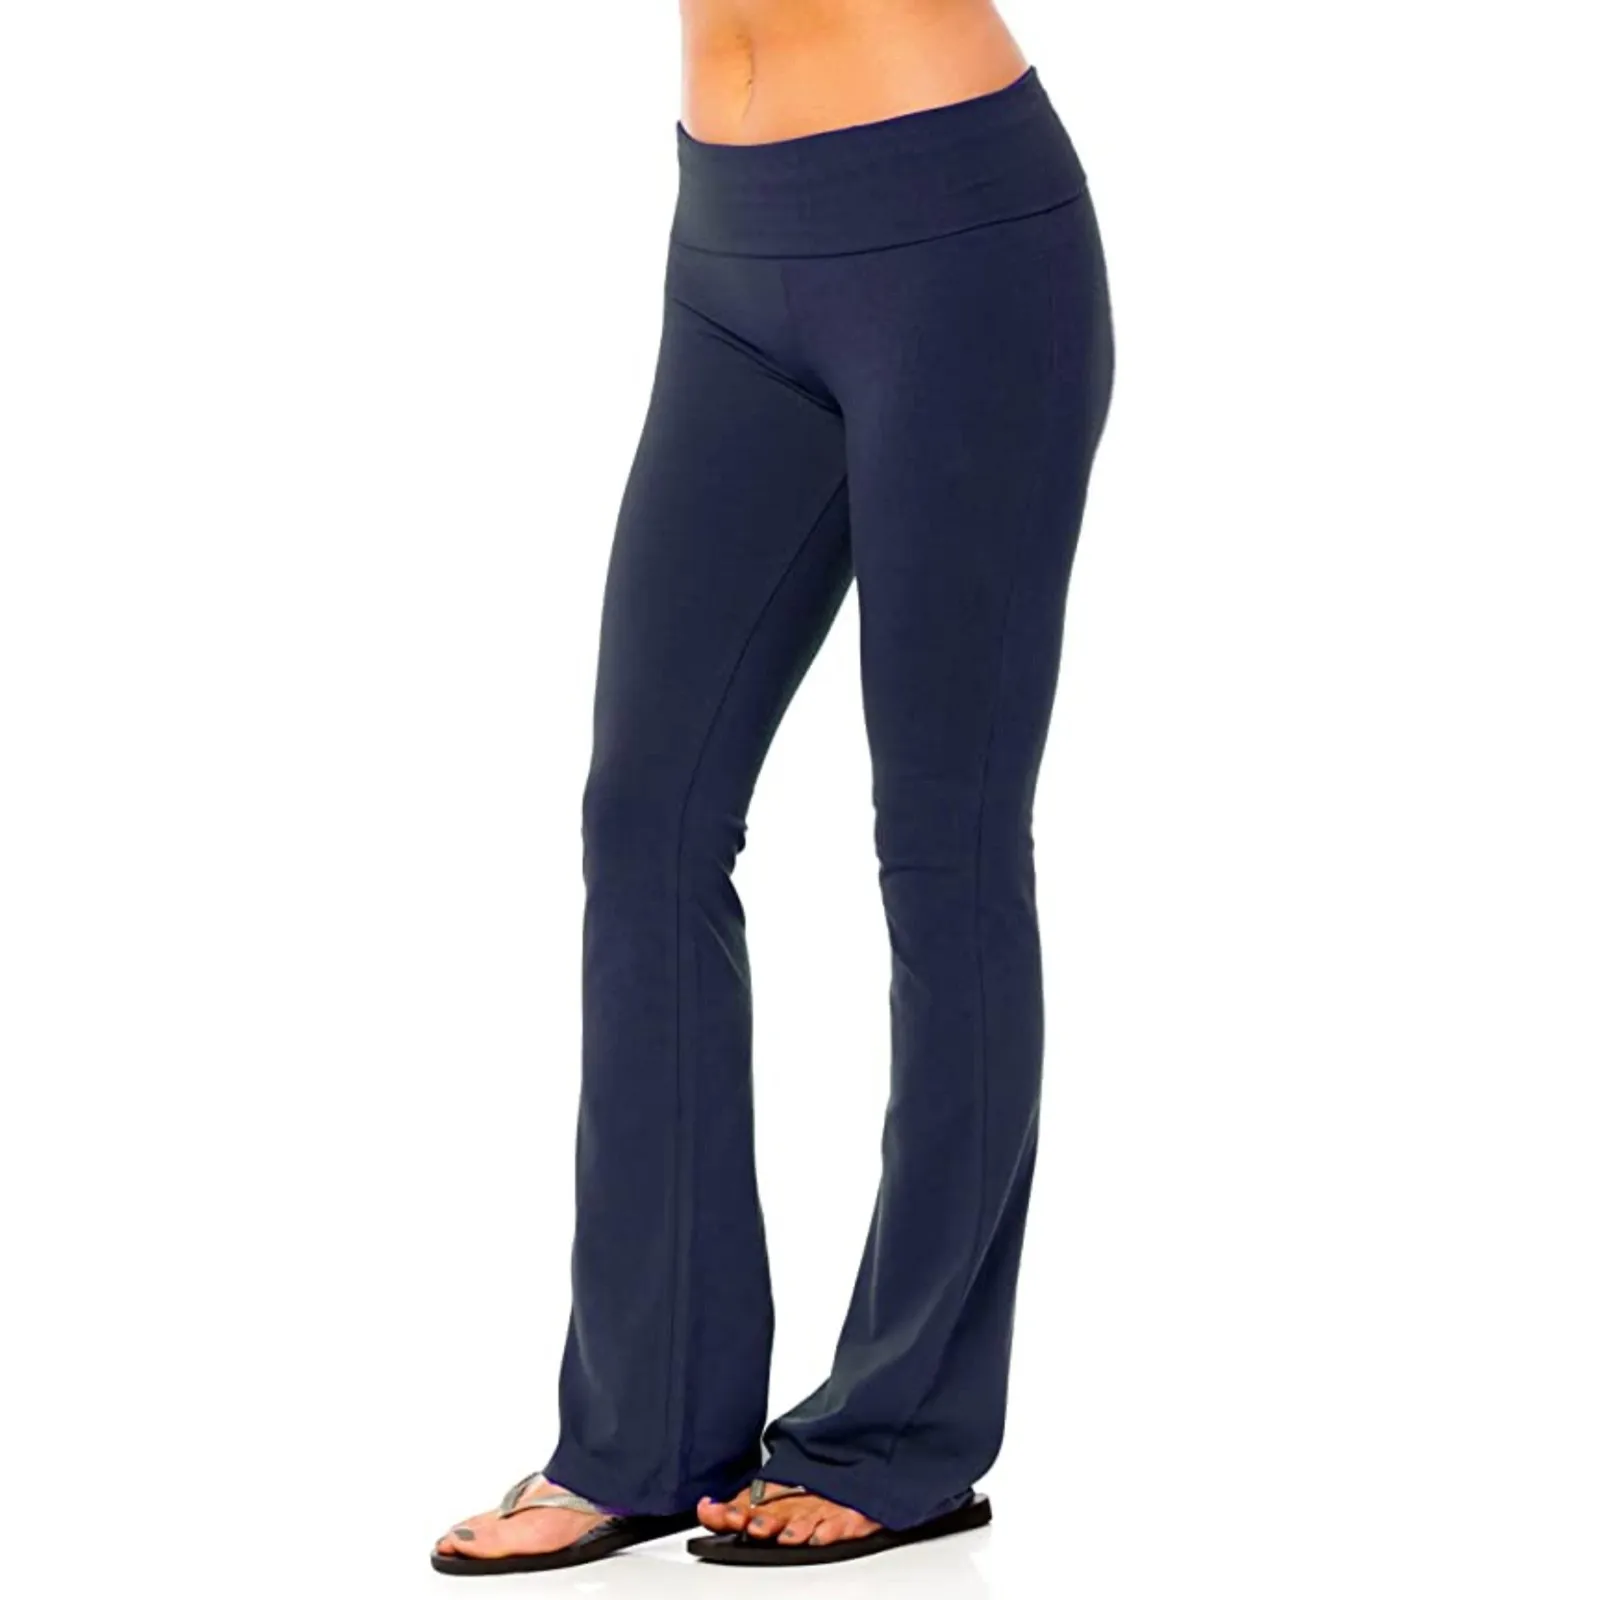 Kadın Streç Yoga Pantolon Katı Yüksek Bel Yoga Tayt Dans Spor Bayan Koşu Spor Pantolon Gevşek Spor Giyim S-3XL Görüntü 4